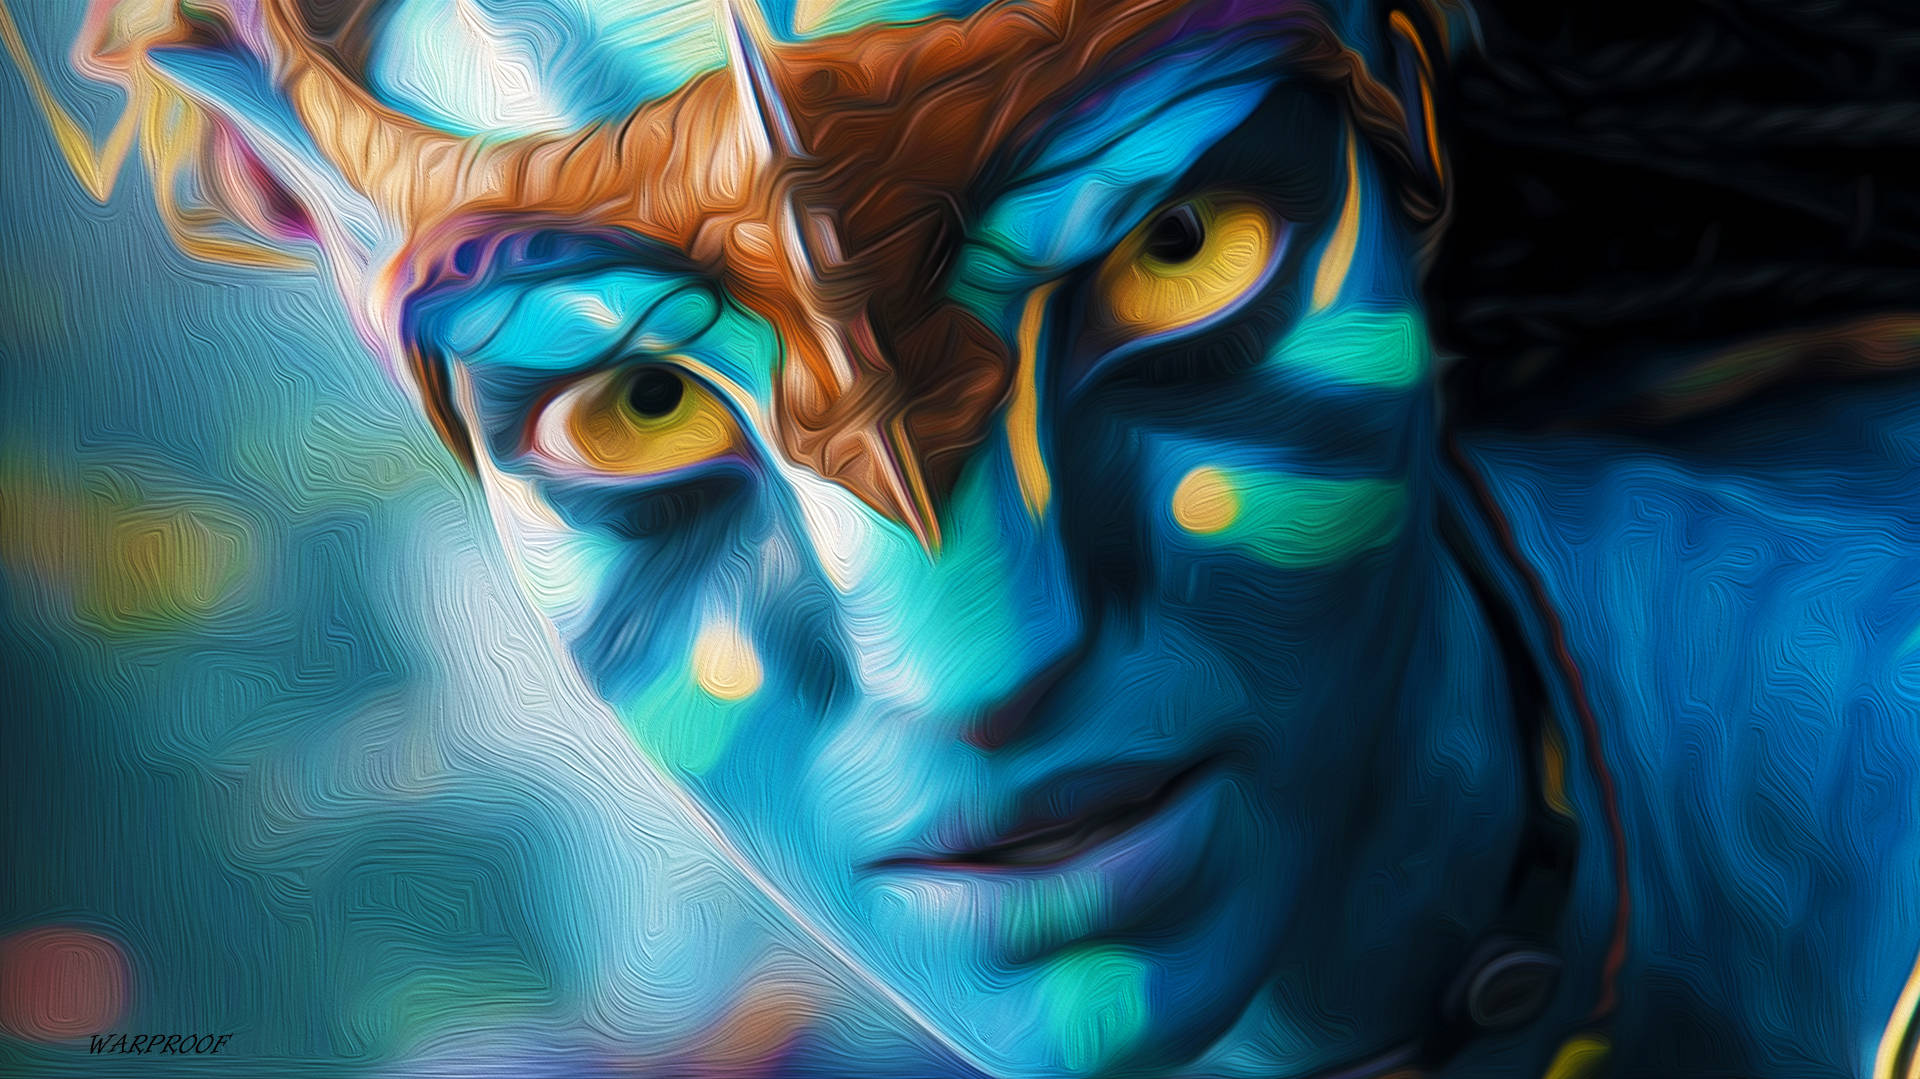 Avatar Neytiri Digital Art Wallpaper